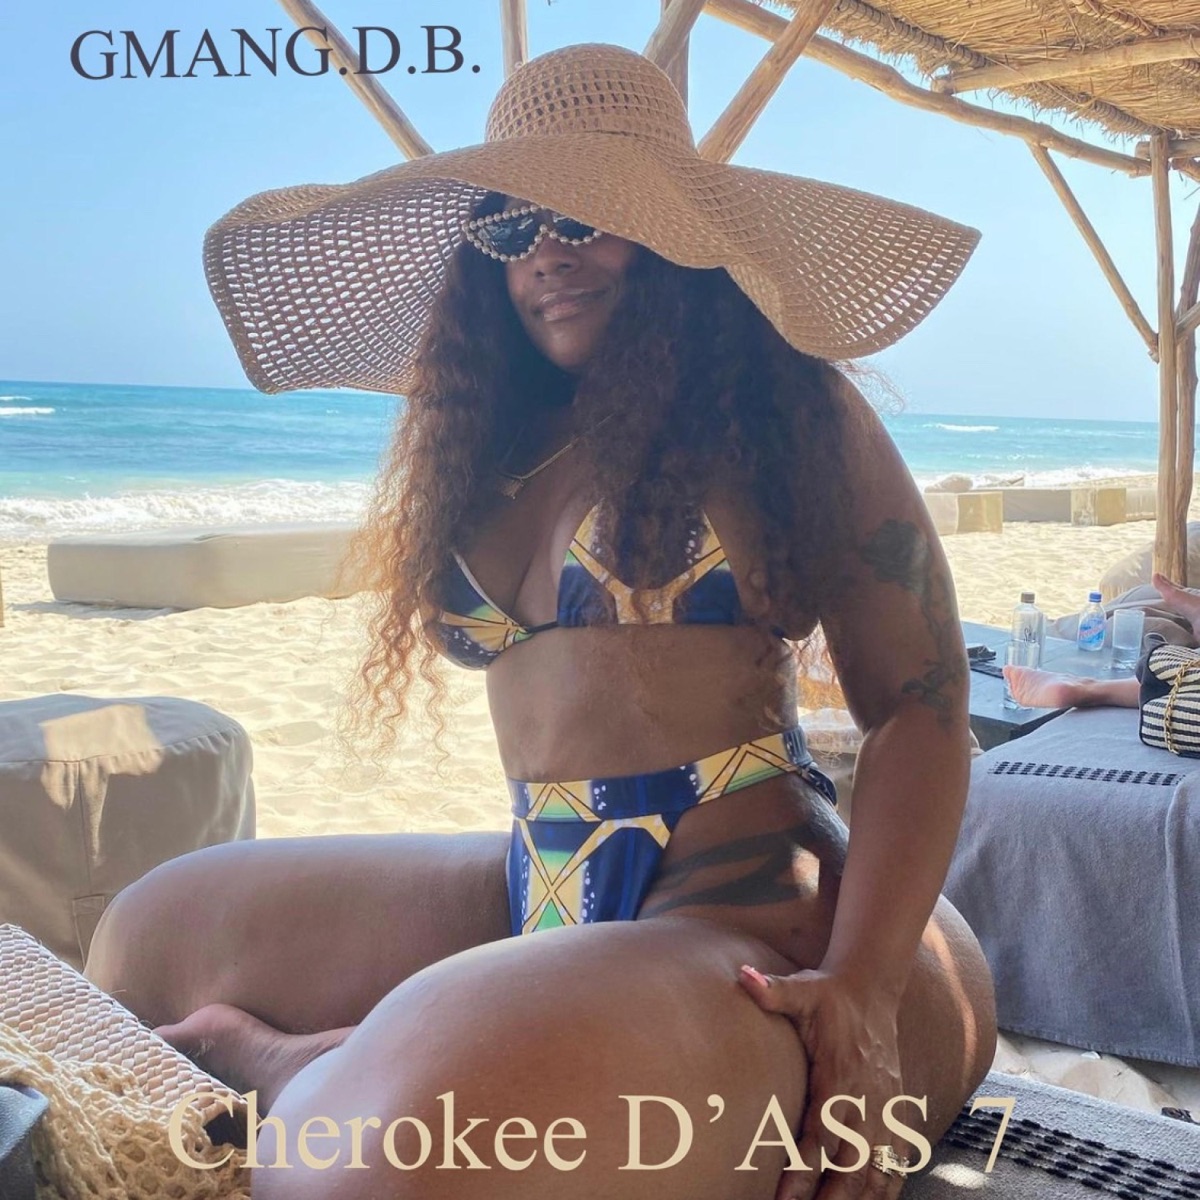 ‎Cherokee D'ASS 7 - Album by Gmang.D.B. - Apple Music